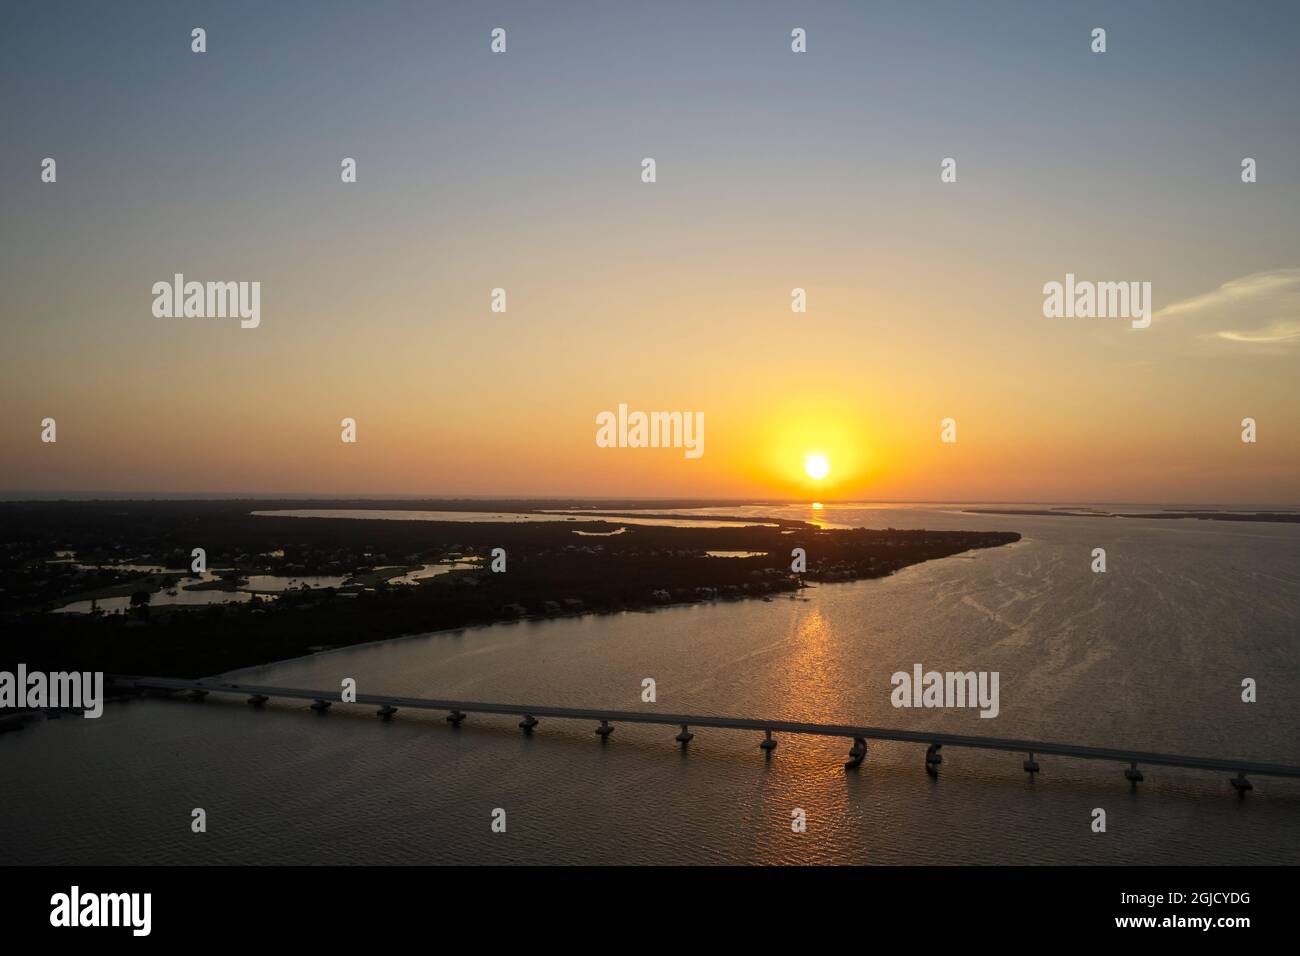 USA, Florida, Sanibel Island. Sonnenuntergang über Sanibel Island und dem Sanibel Causeway. Sanibel Island ist ein beliebtes Touristenziel und ist dafür bekannt Stockfoto